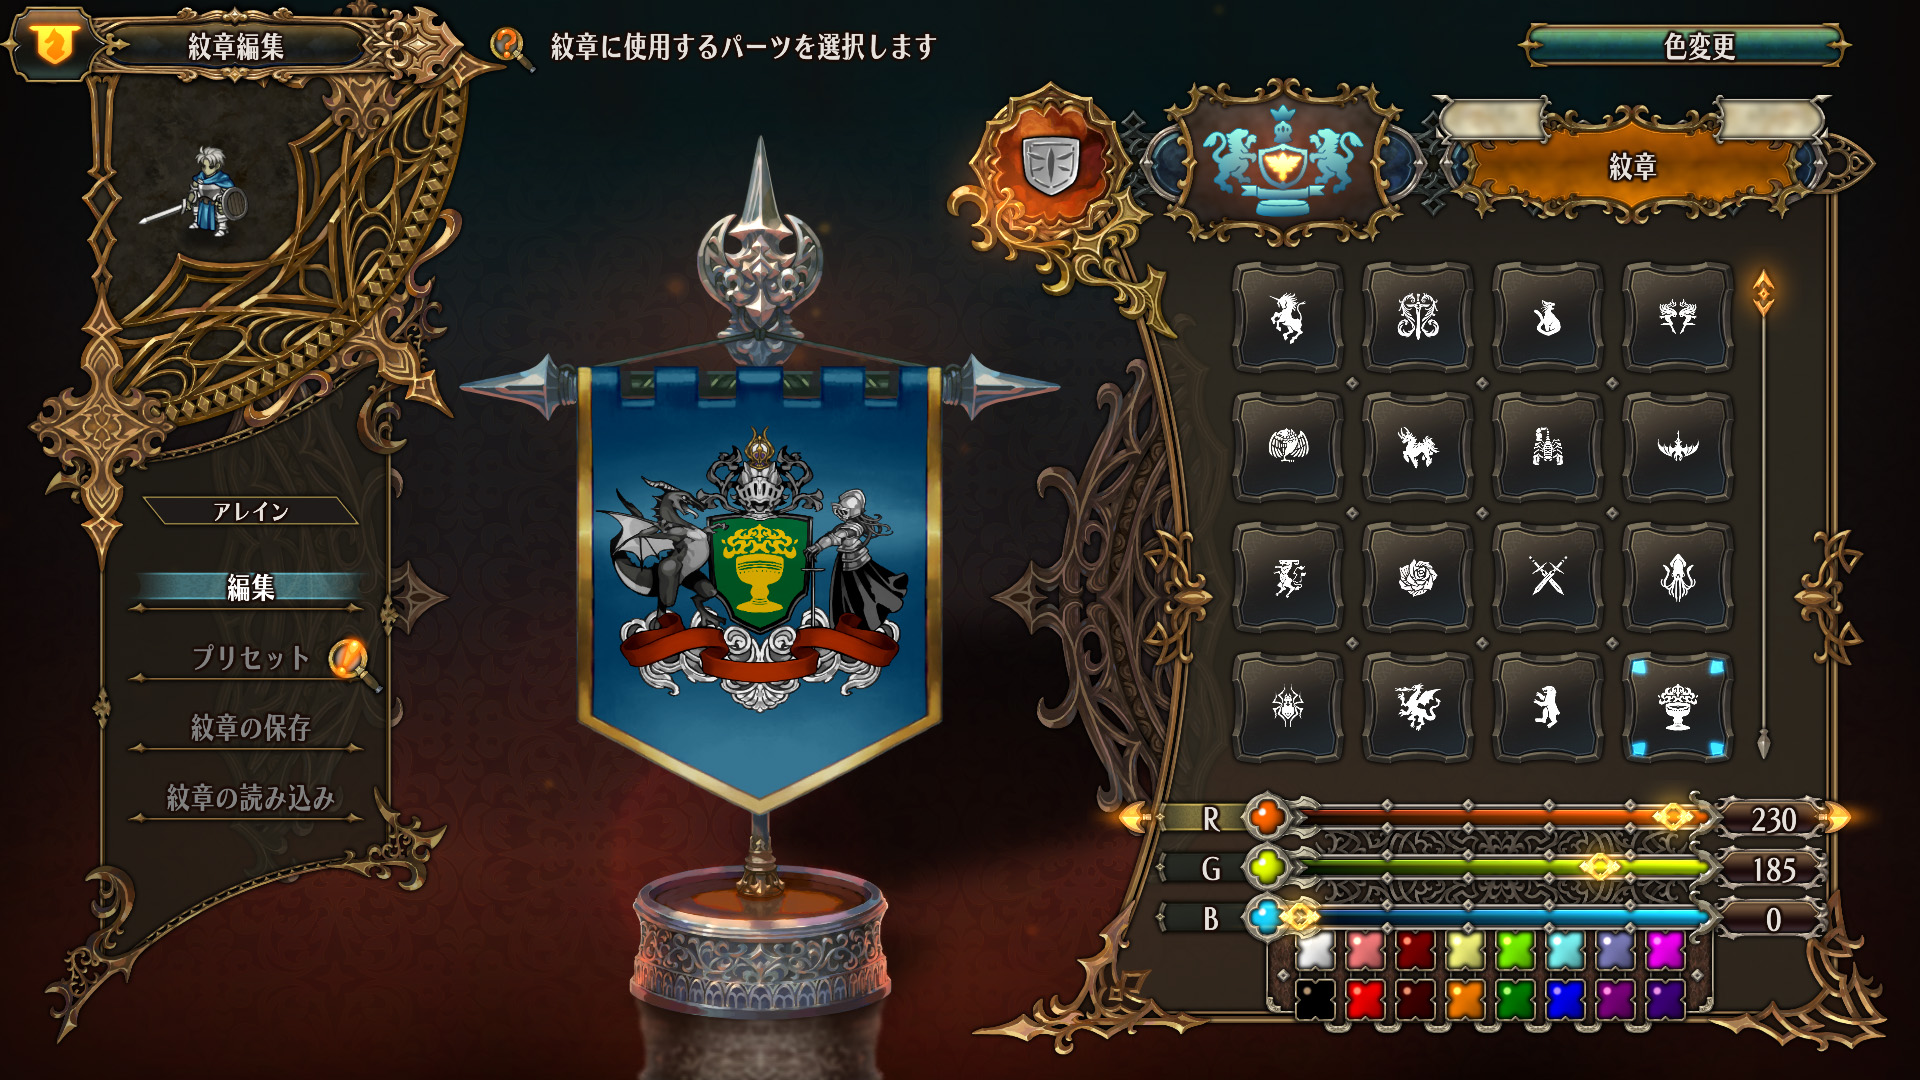 《圣兽之王》公布最新资讯 同伴角色及斗技场、纹章等要素